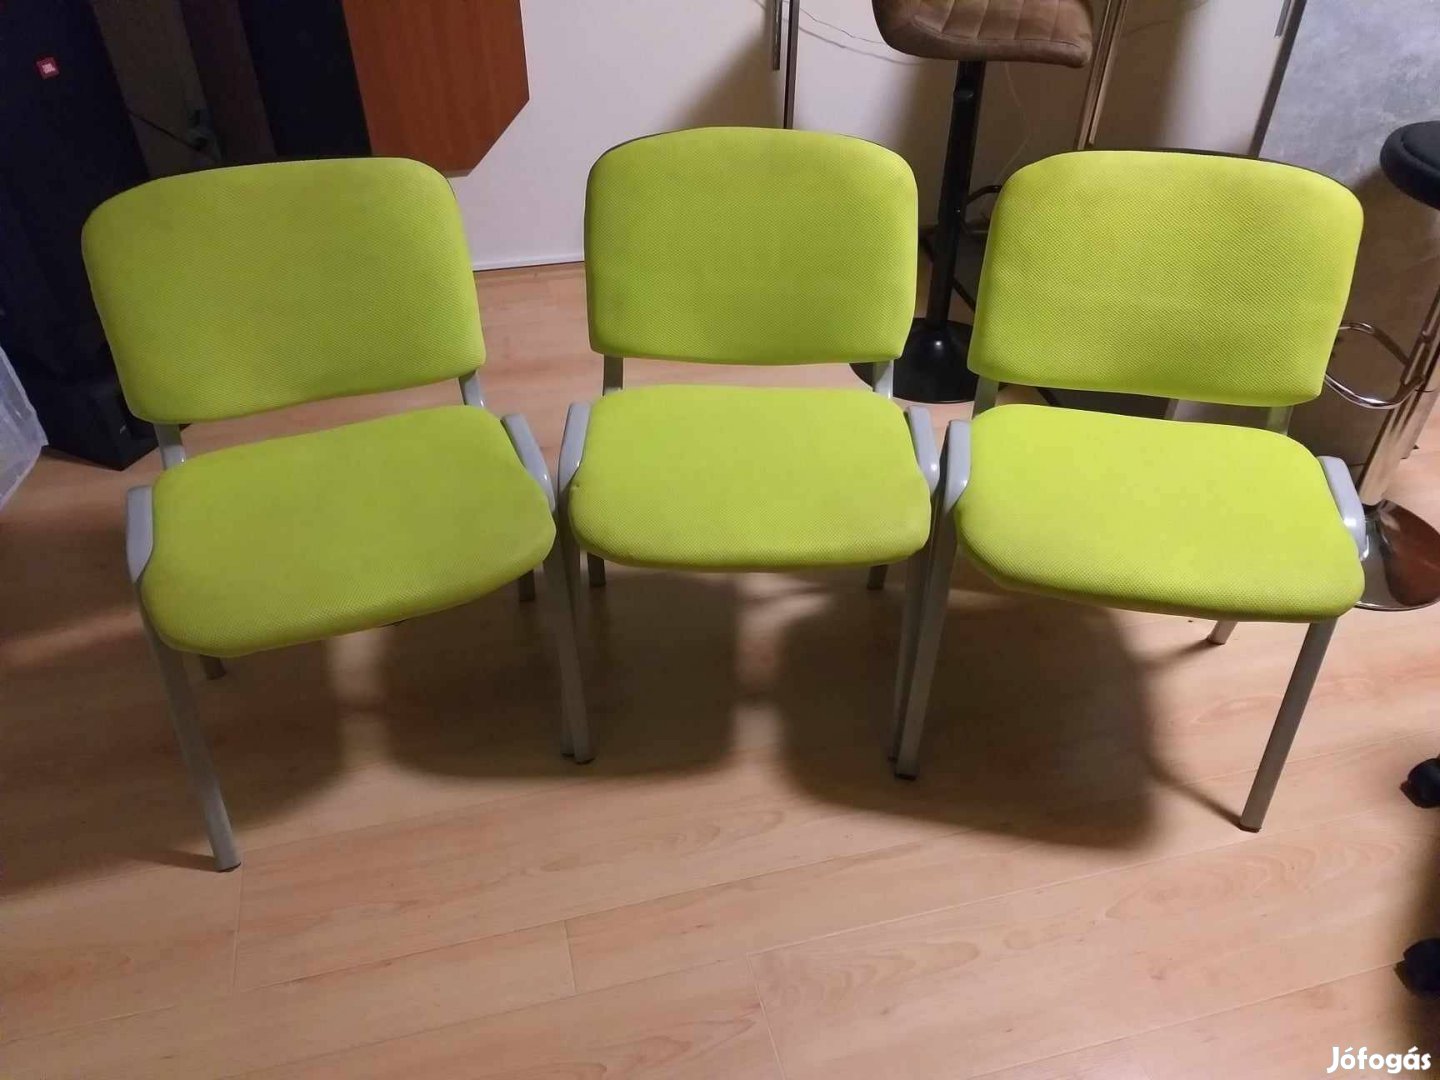 Irodai székek